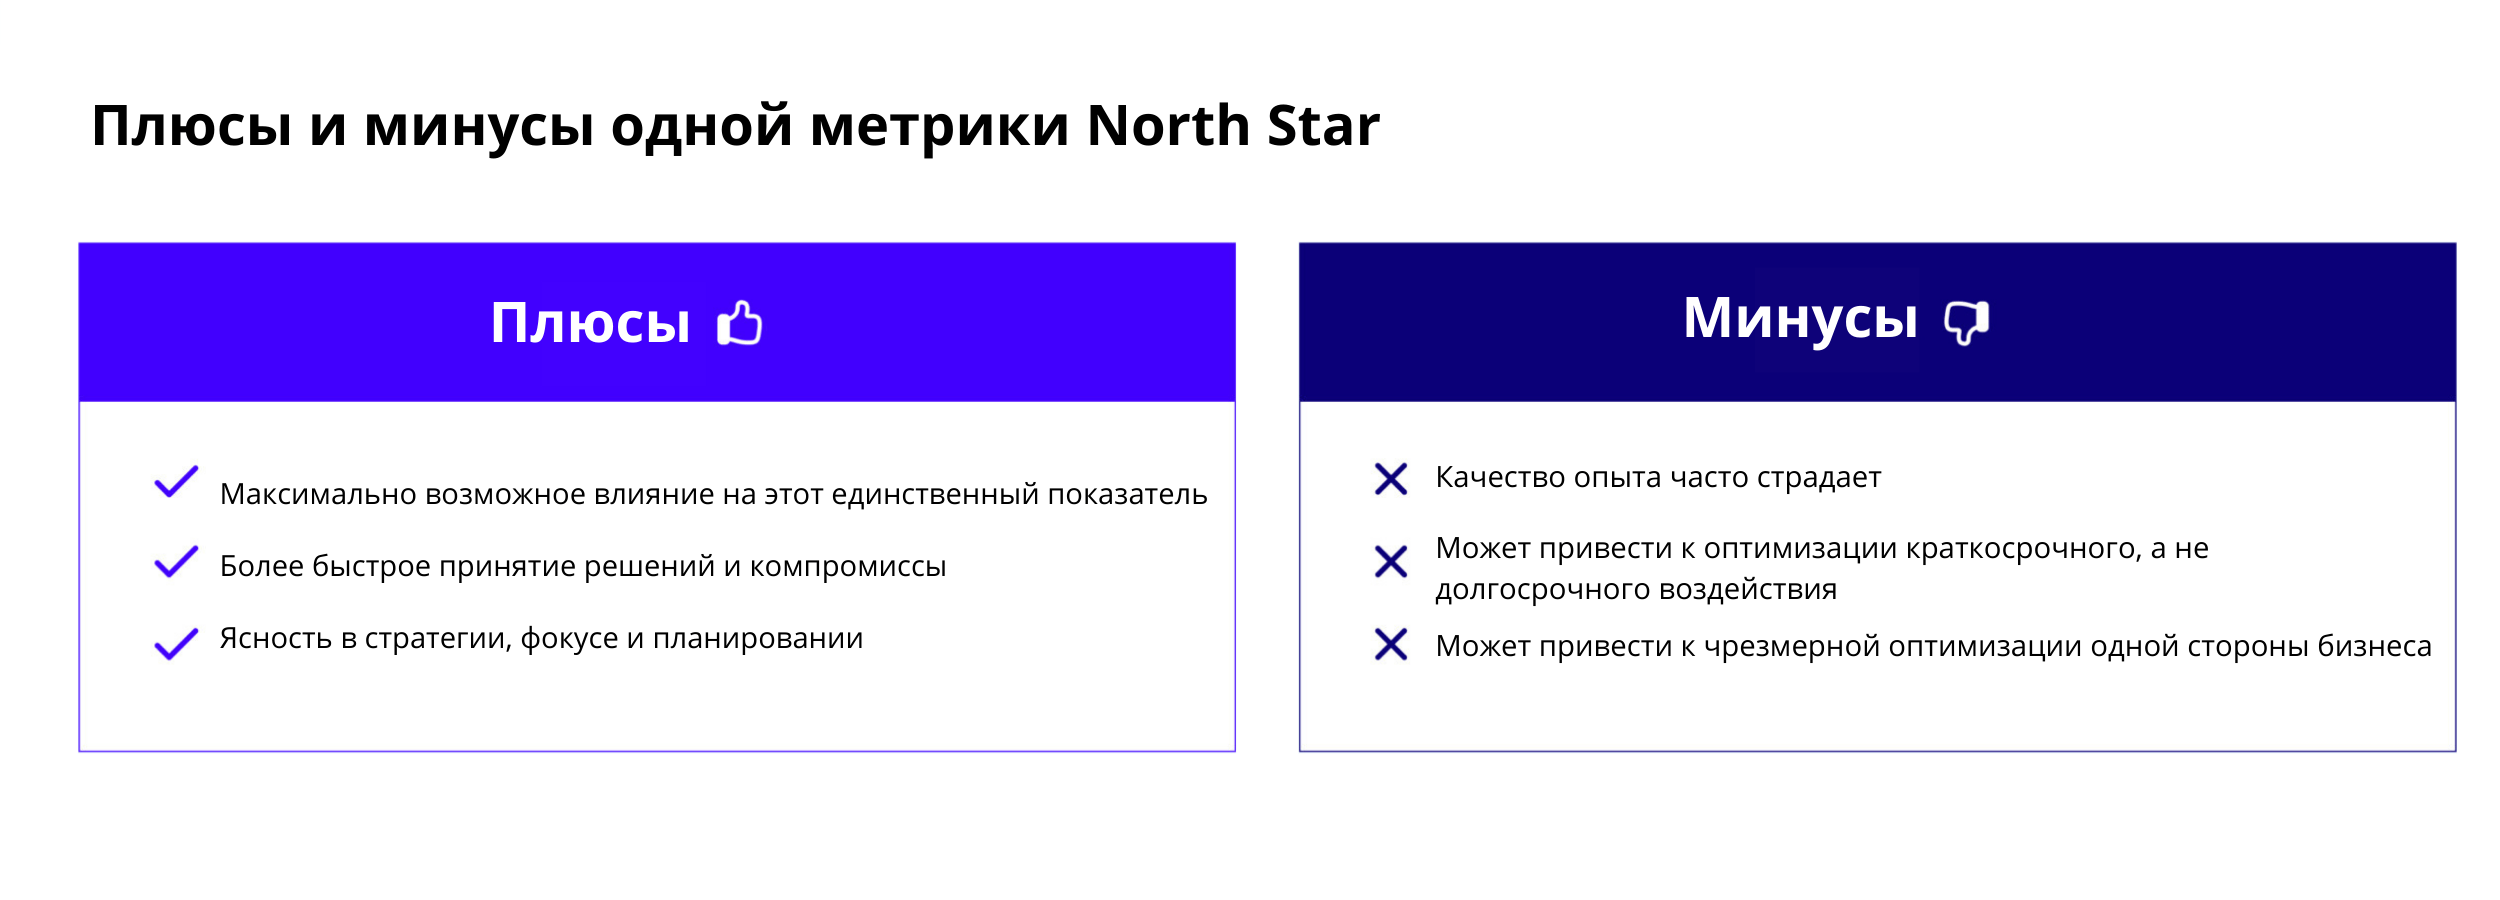 North Star Metric (NSM) - Выбор Метрики Полярной Звезды